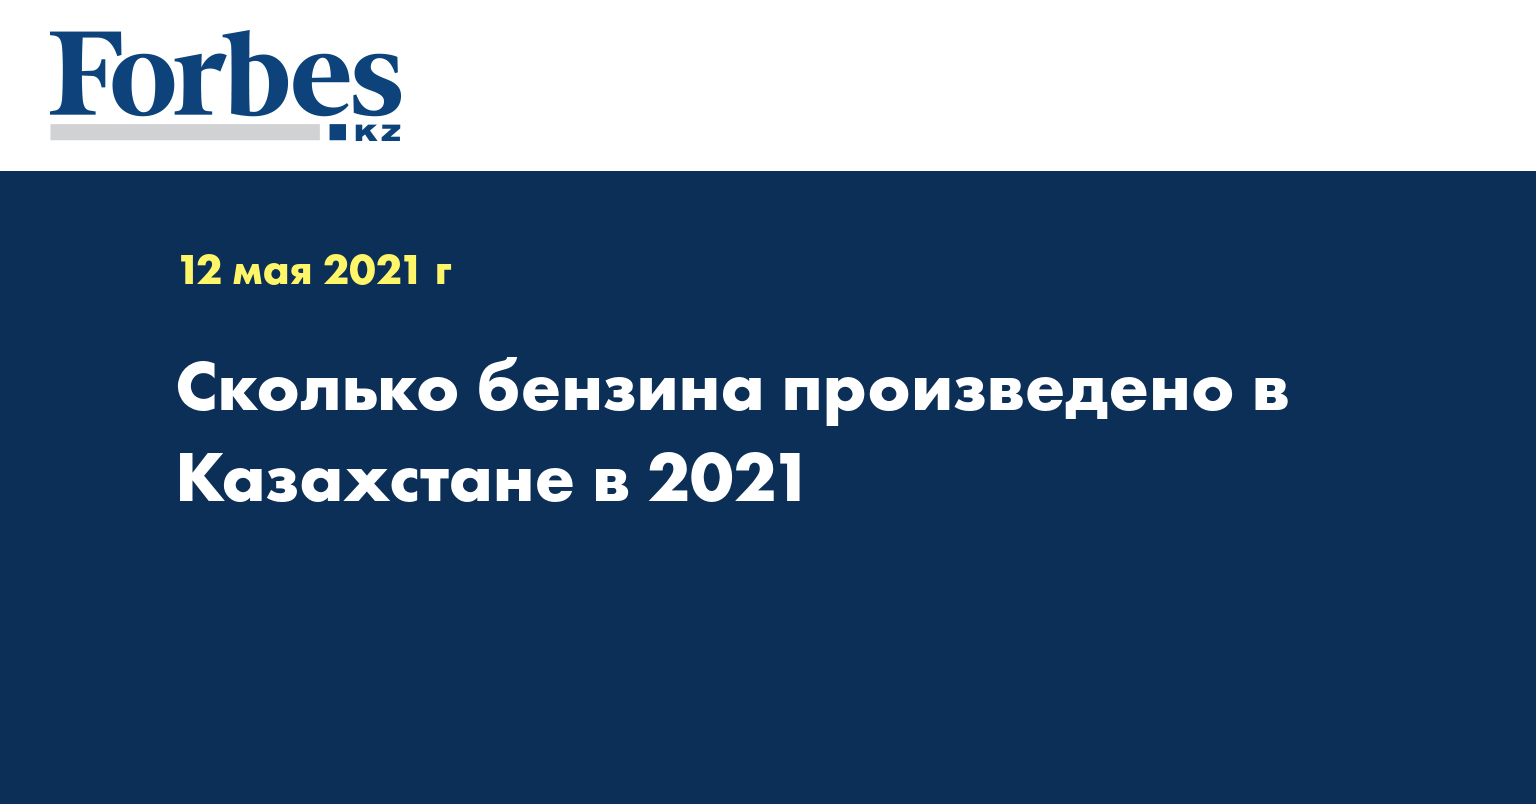 Сколько бензина произведено в Казахстане в 2021